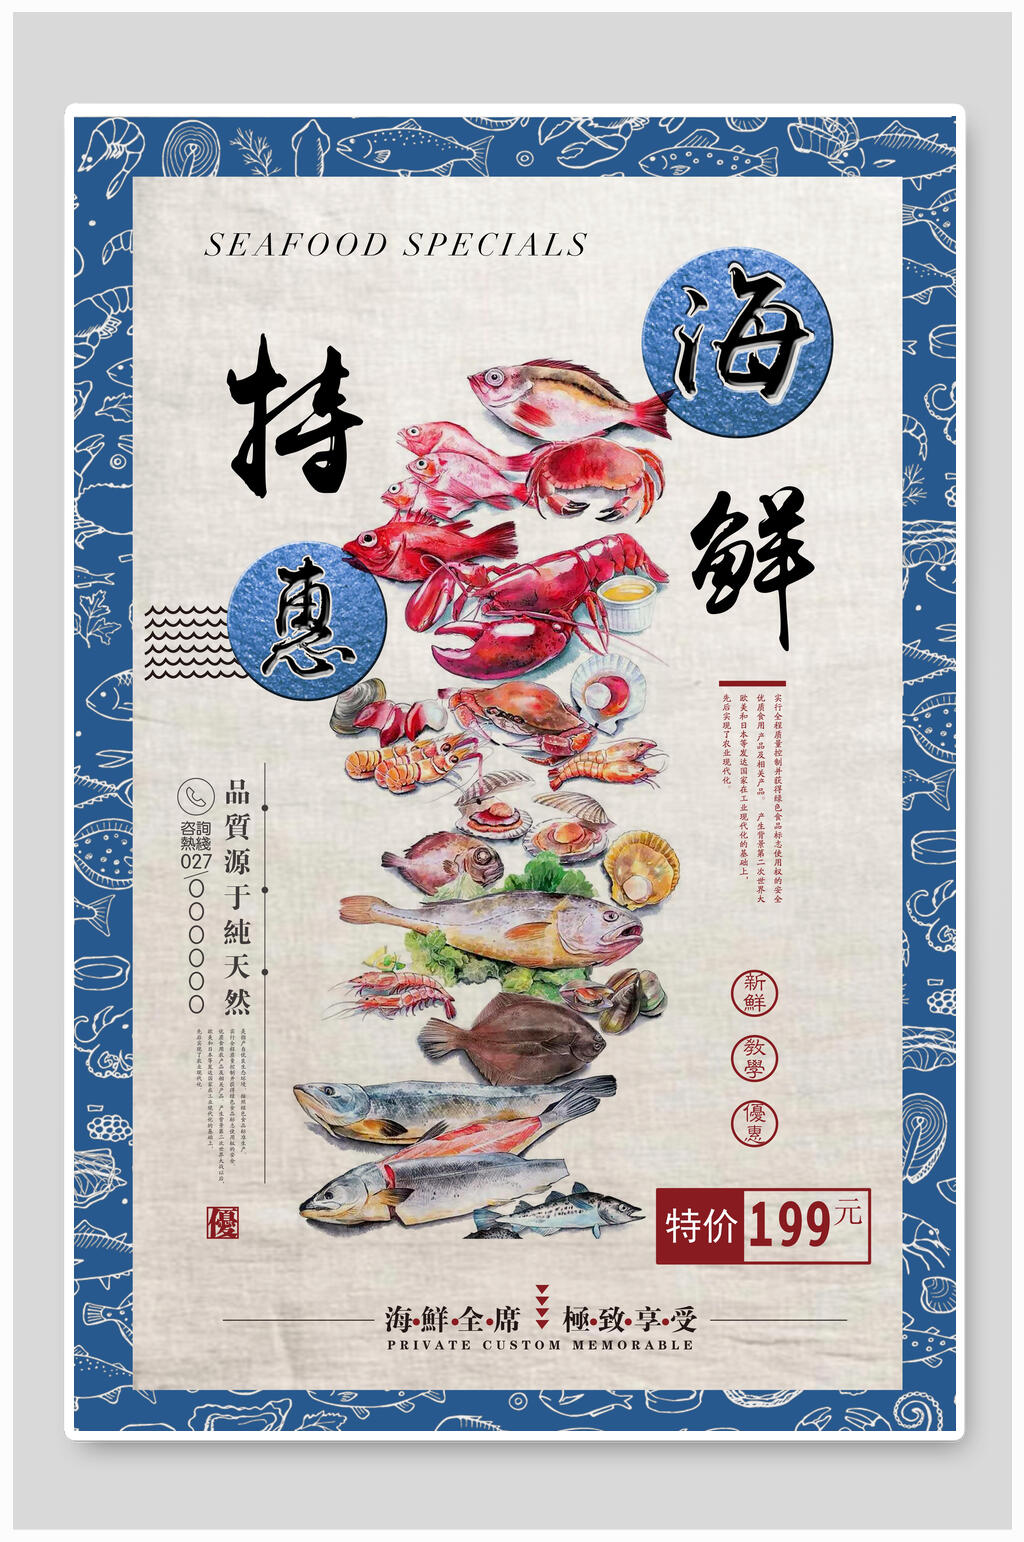 中式海鲜特惠餐饮美食促销海报